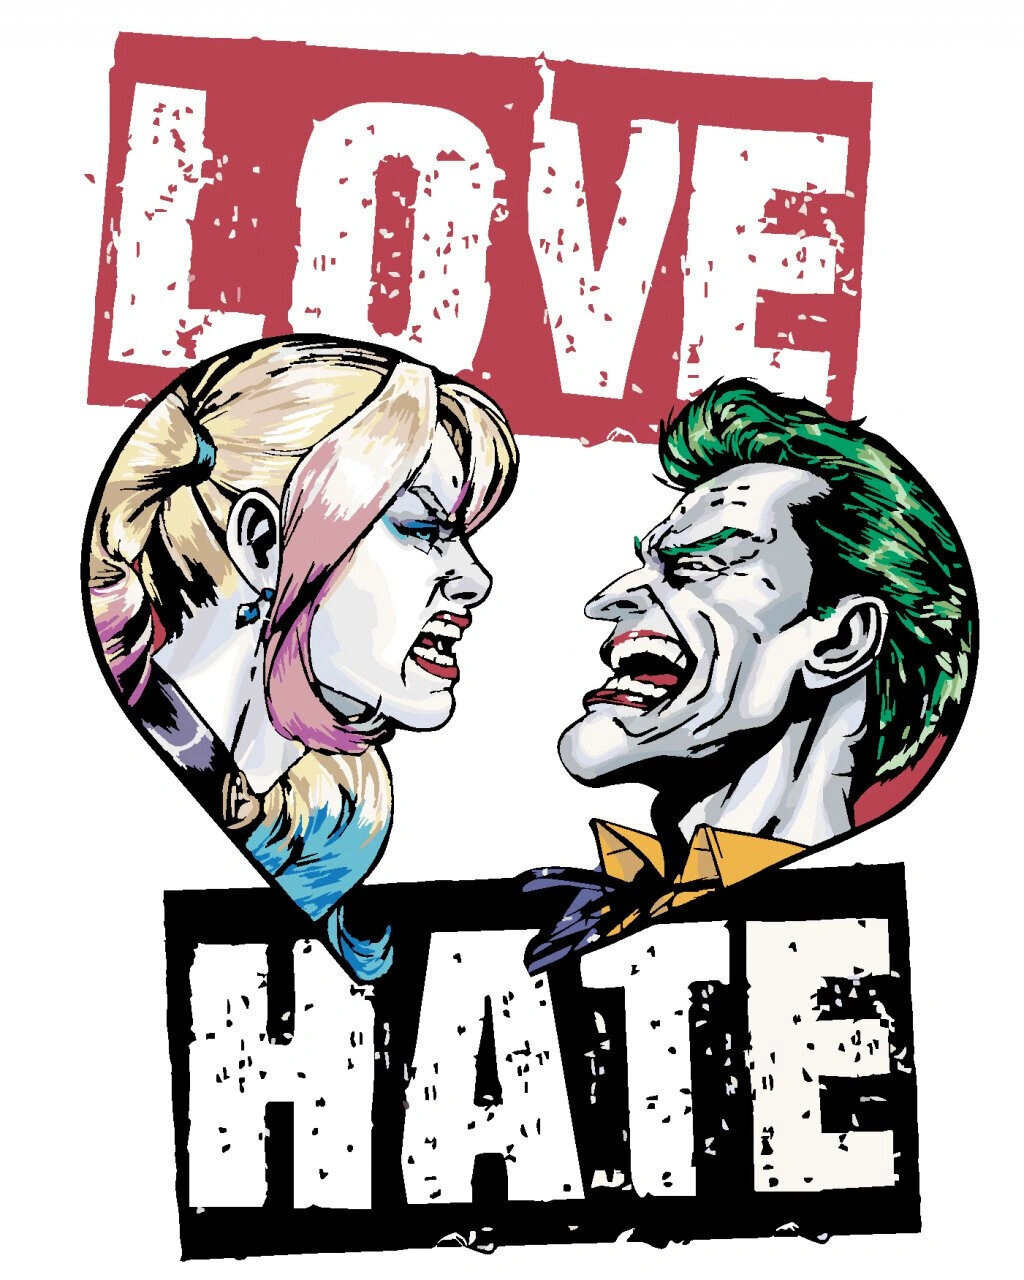 Festés számok szerint Zuty Festés számok szerint Harley Quinn és Joker (Batman)